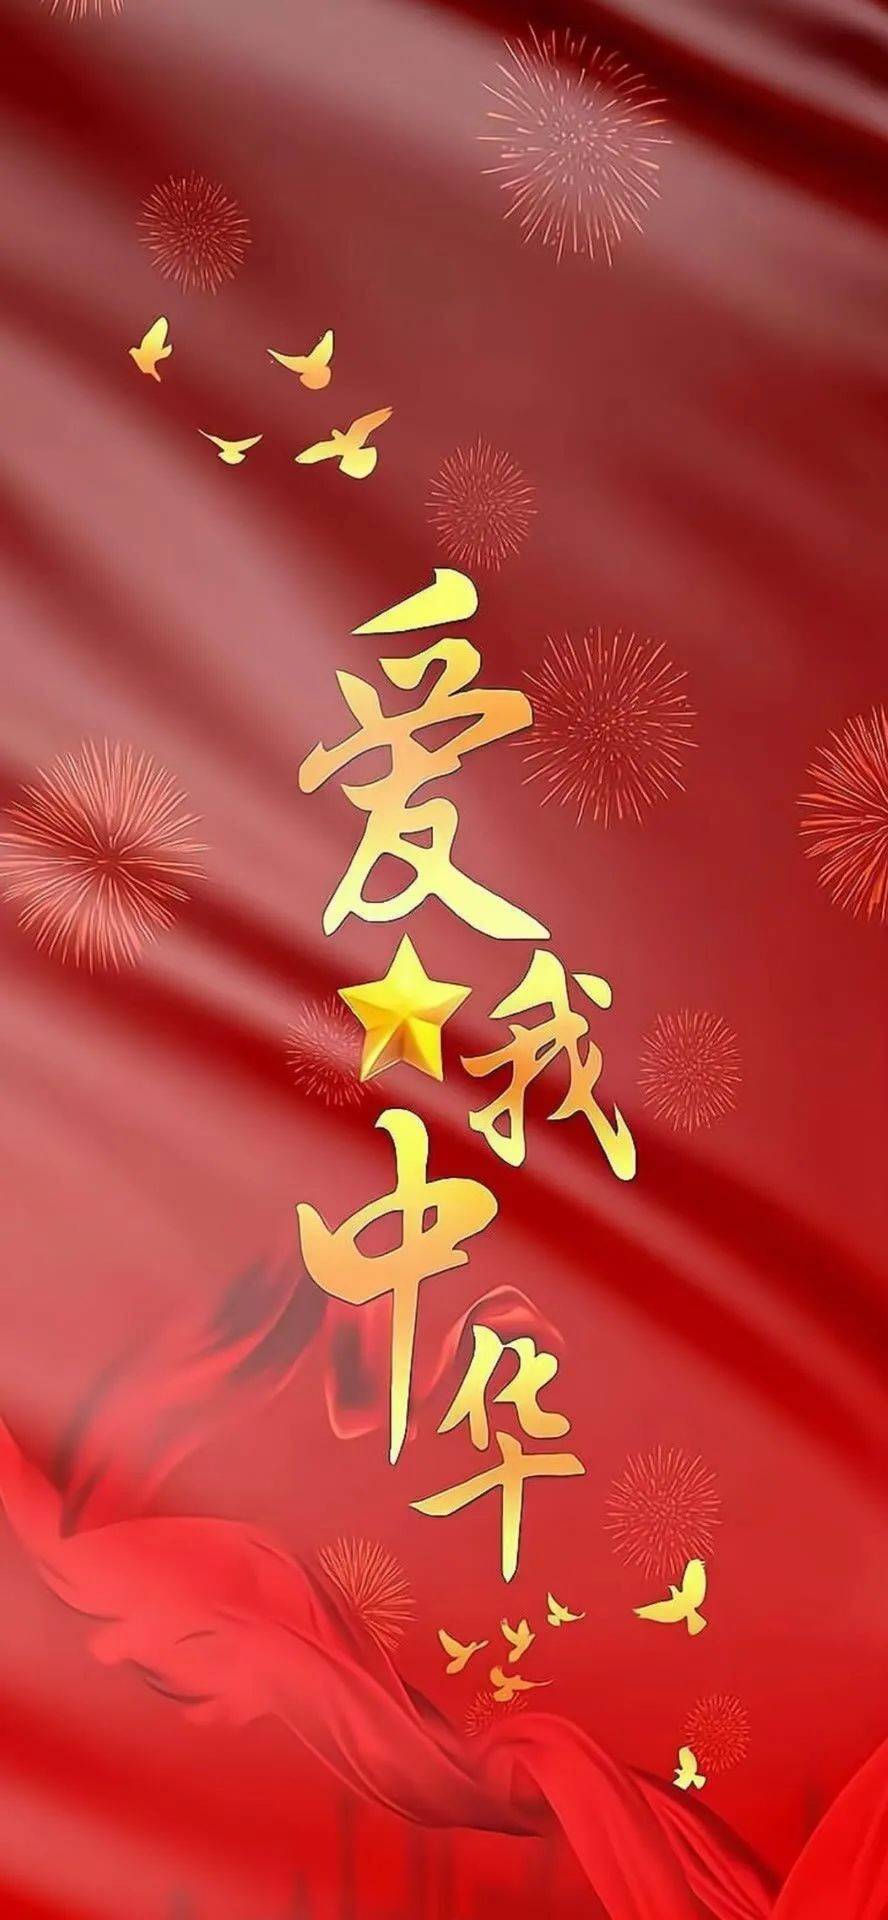 《壁纸》中国人的中国红!爱国!